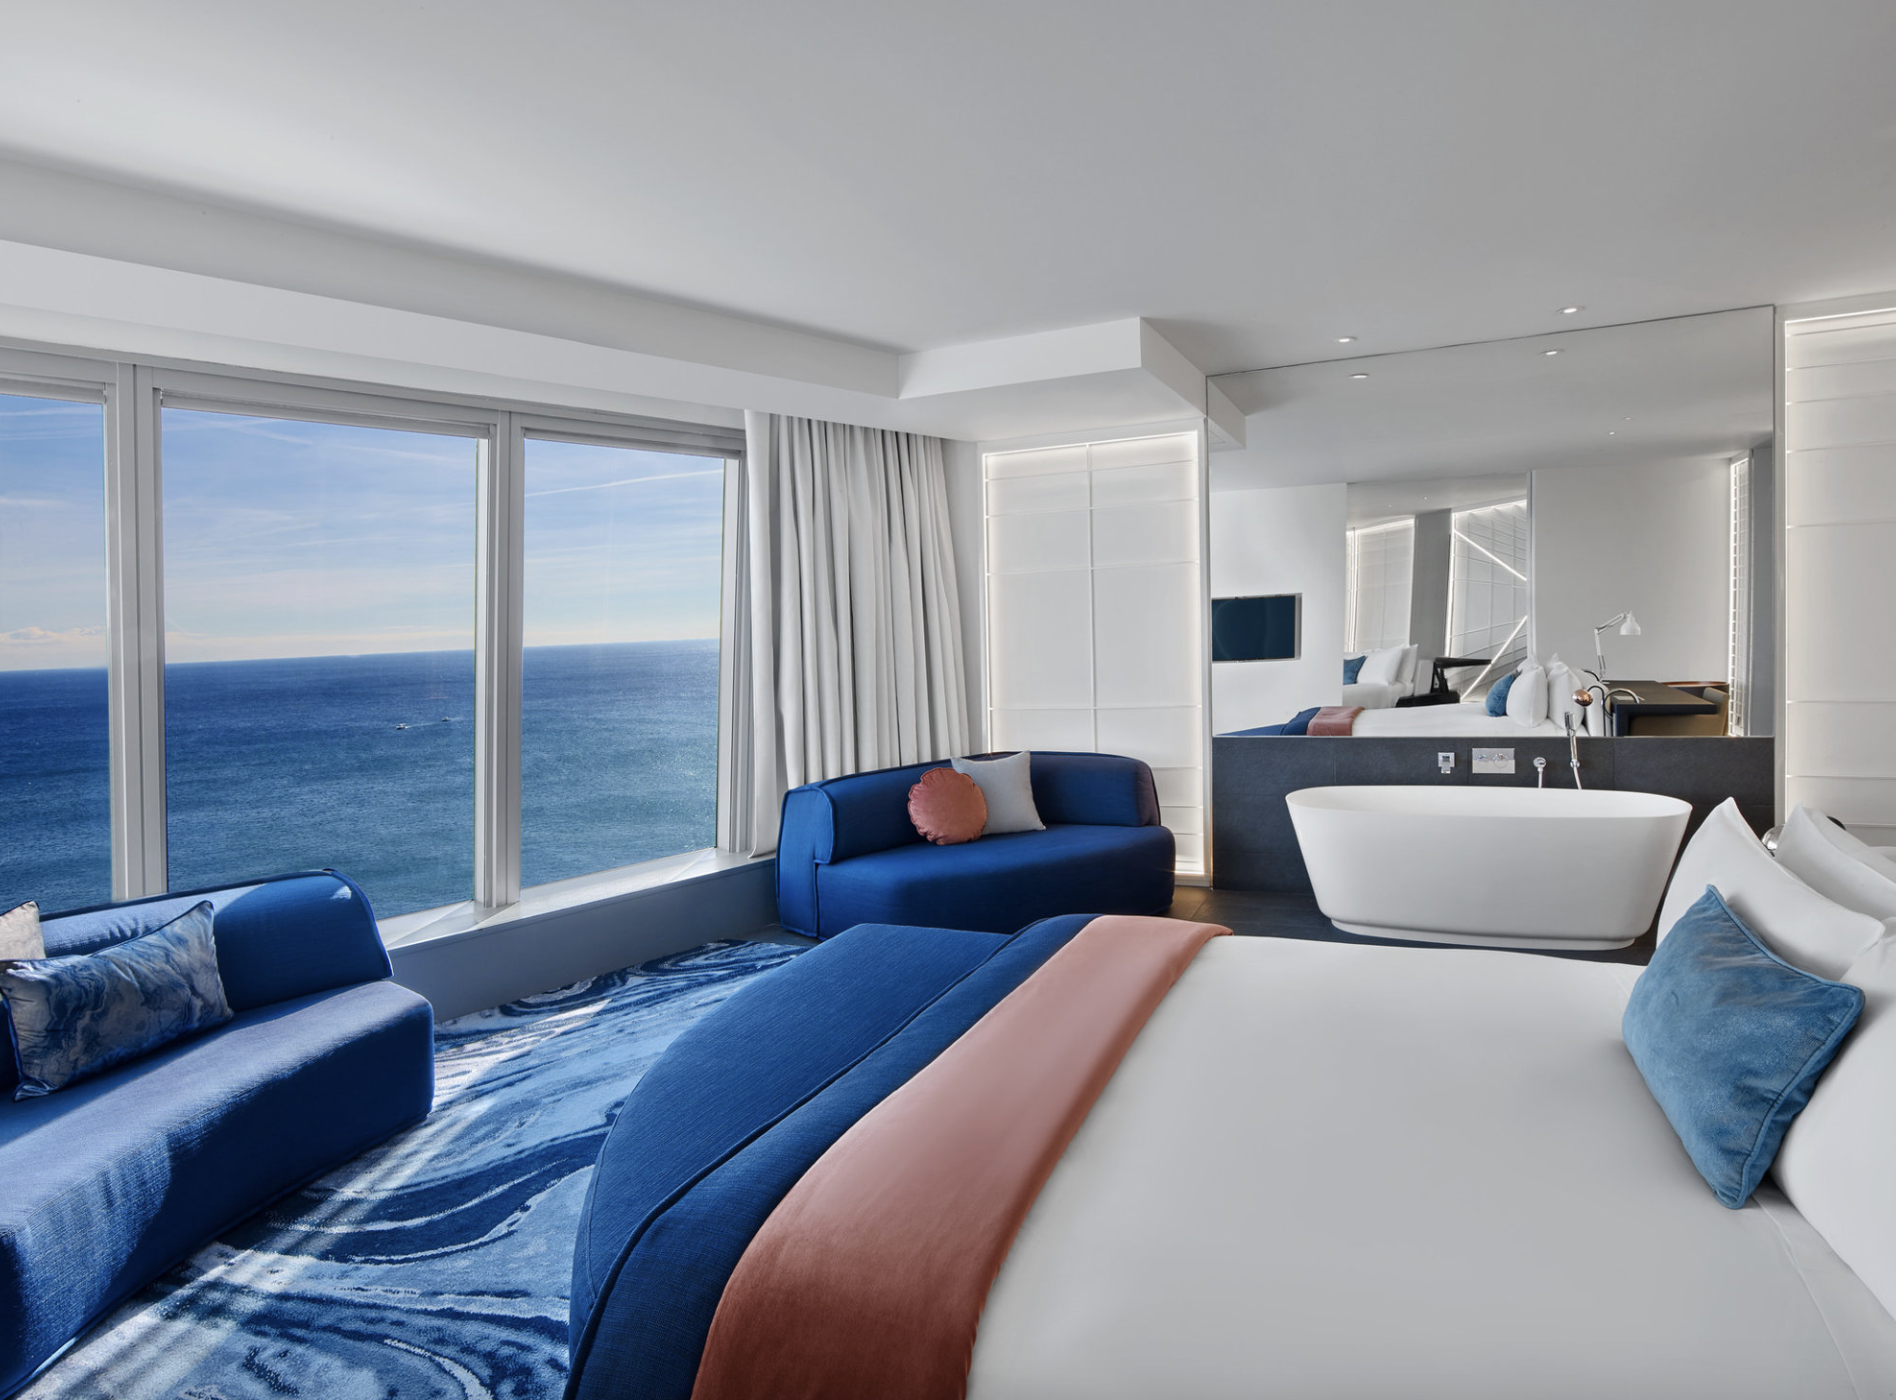 habitacion de hotel en tonos azules